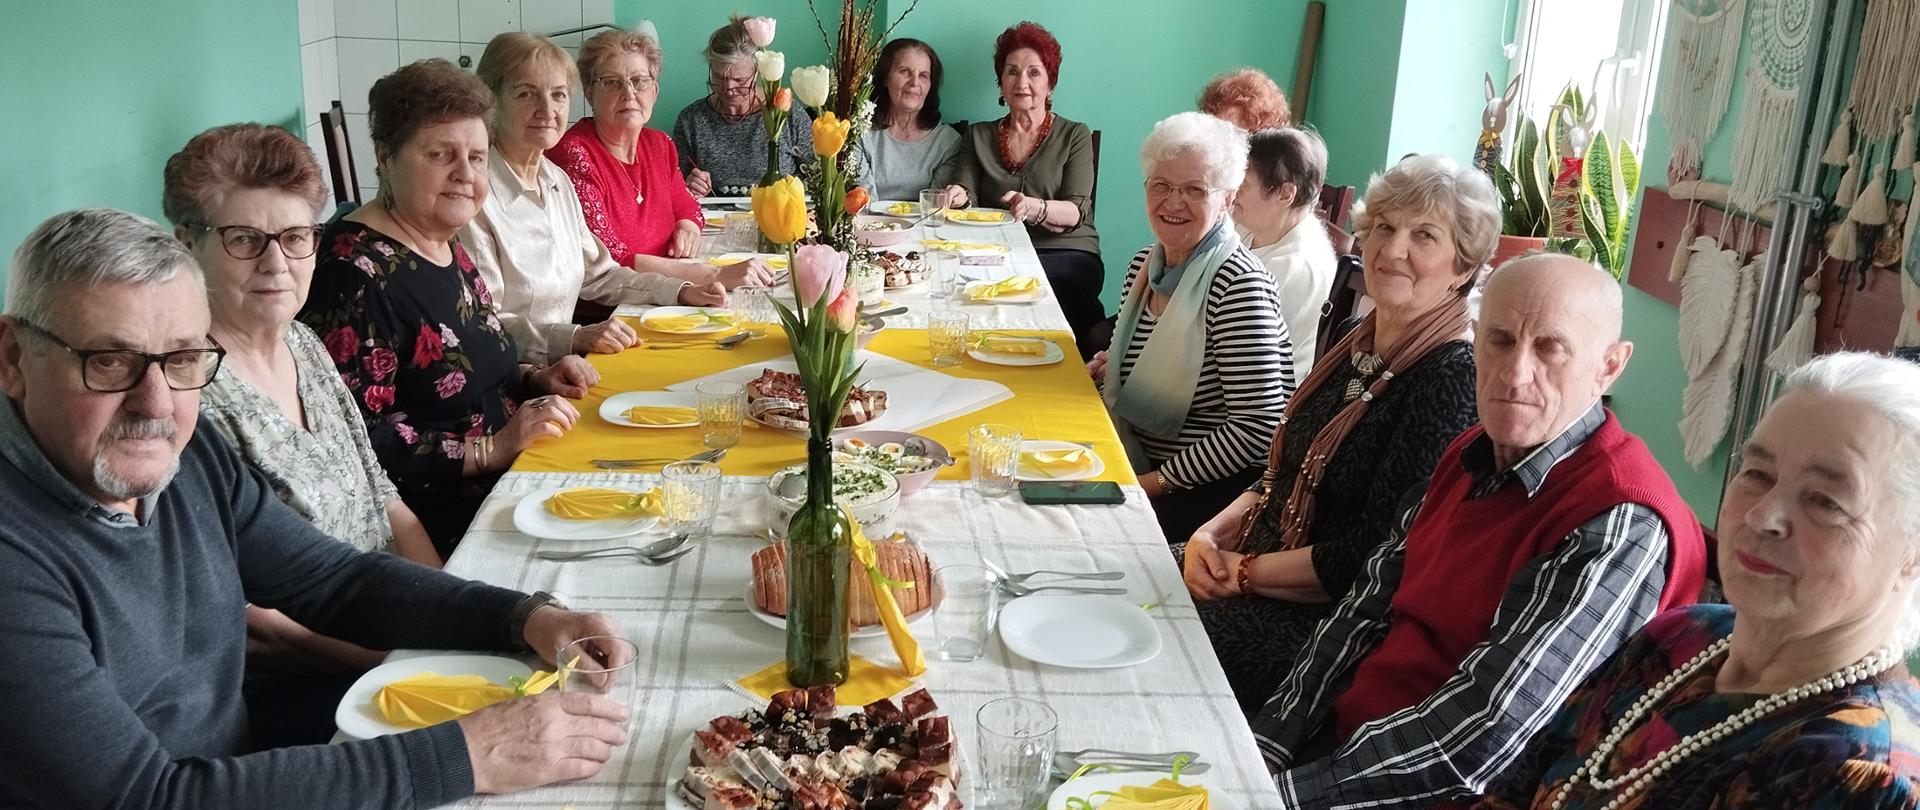 Członkowie klubu senior+ siedzący przy wielkanocnym stole. Stół przyozdobiony tulipanami, na stole stojące wielkanocne potrawy i ciasto.